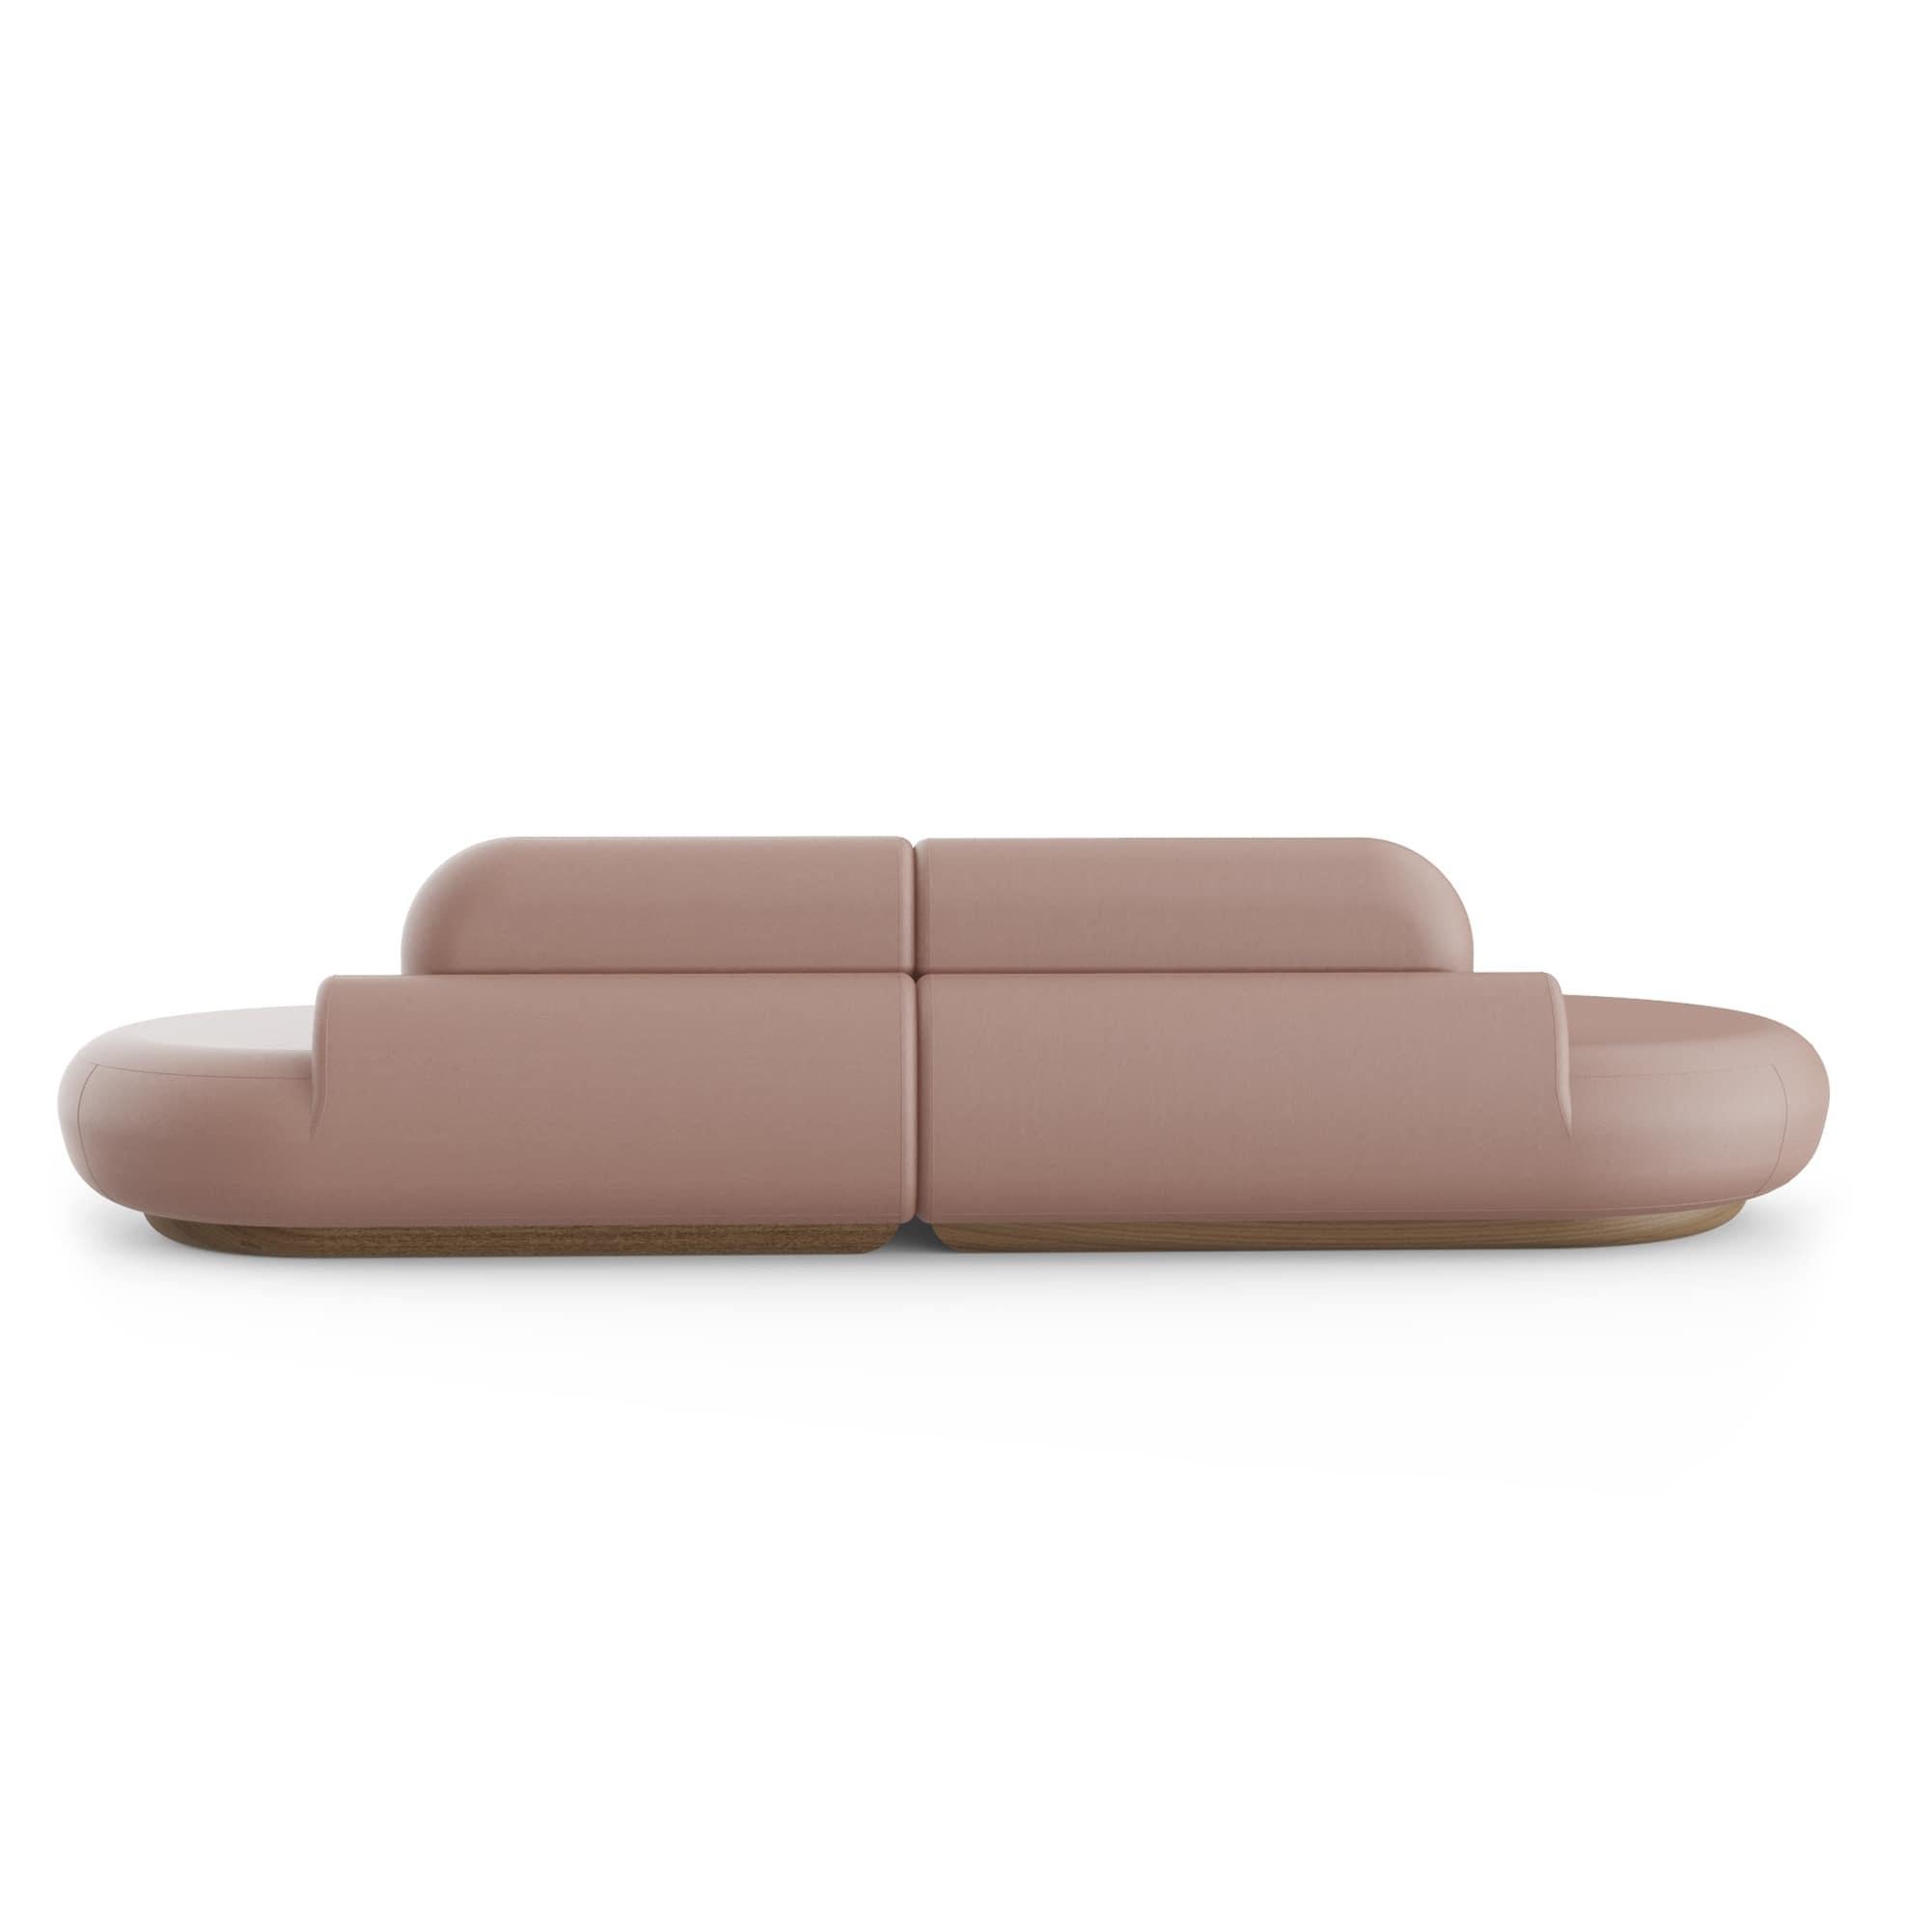 Contemporary Naked Sofa by Dooq